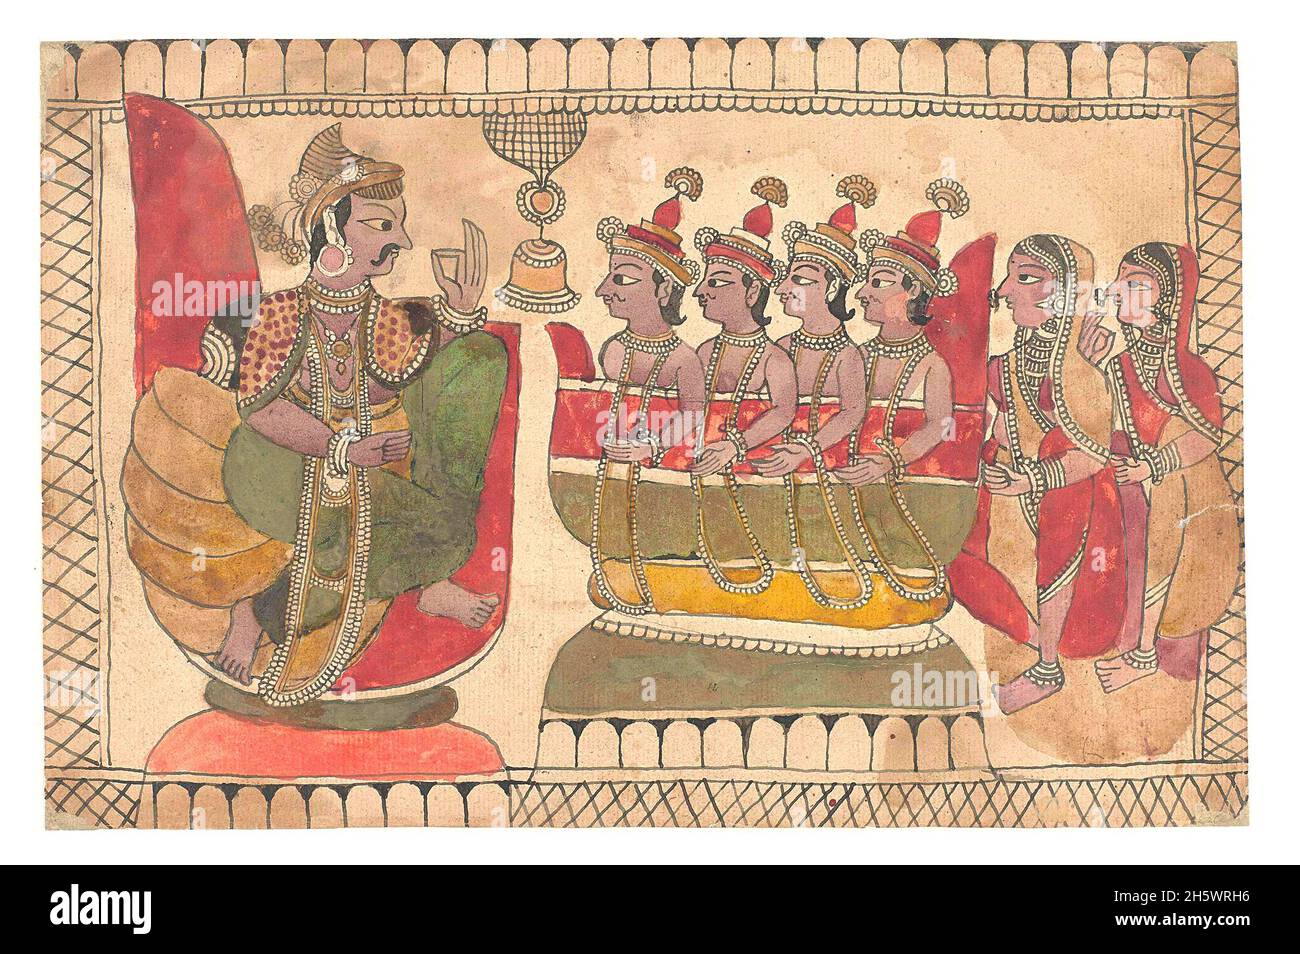 Imágenes históricas indias / Rajastnani - probablemente una escena de la Mahabharata / Ramayana. Siglo XIX. Rajasthan-escuela. Una versión mejorada/optimizada digitalmente de una imagen histórica. Foto de stock